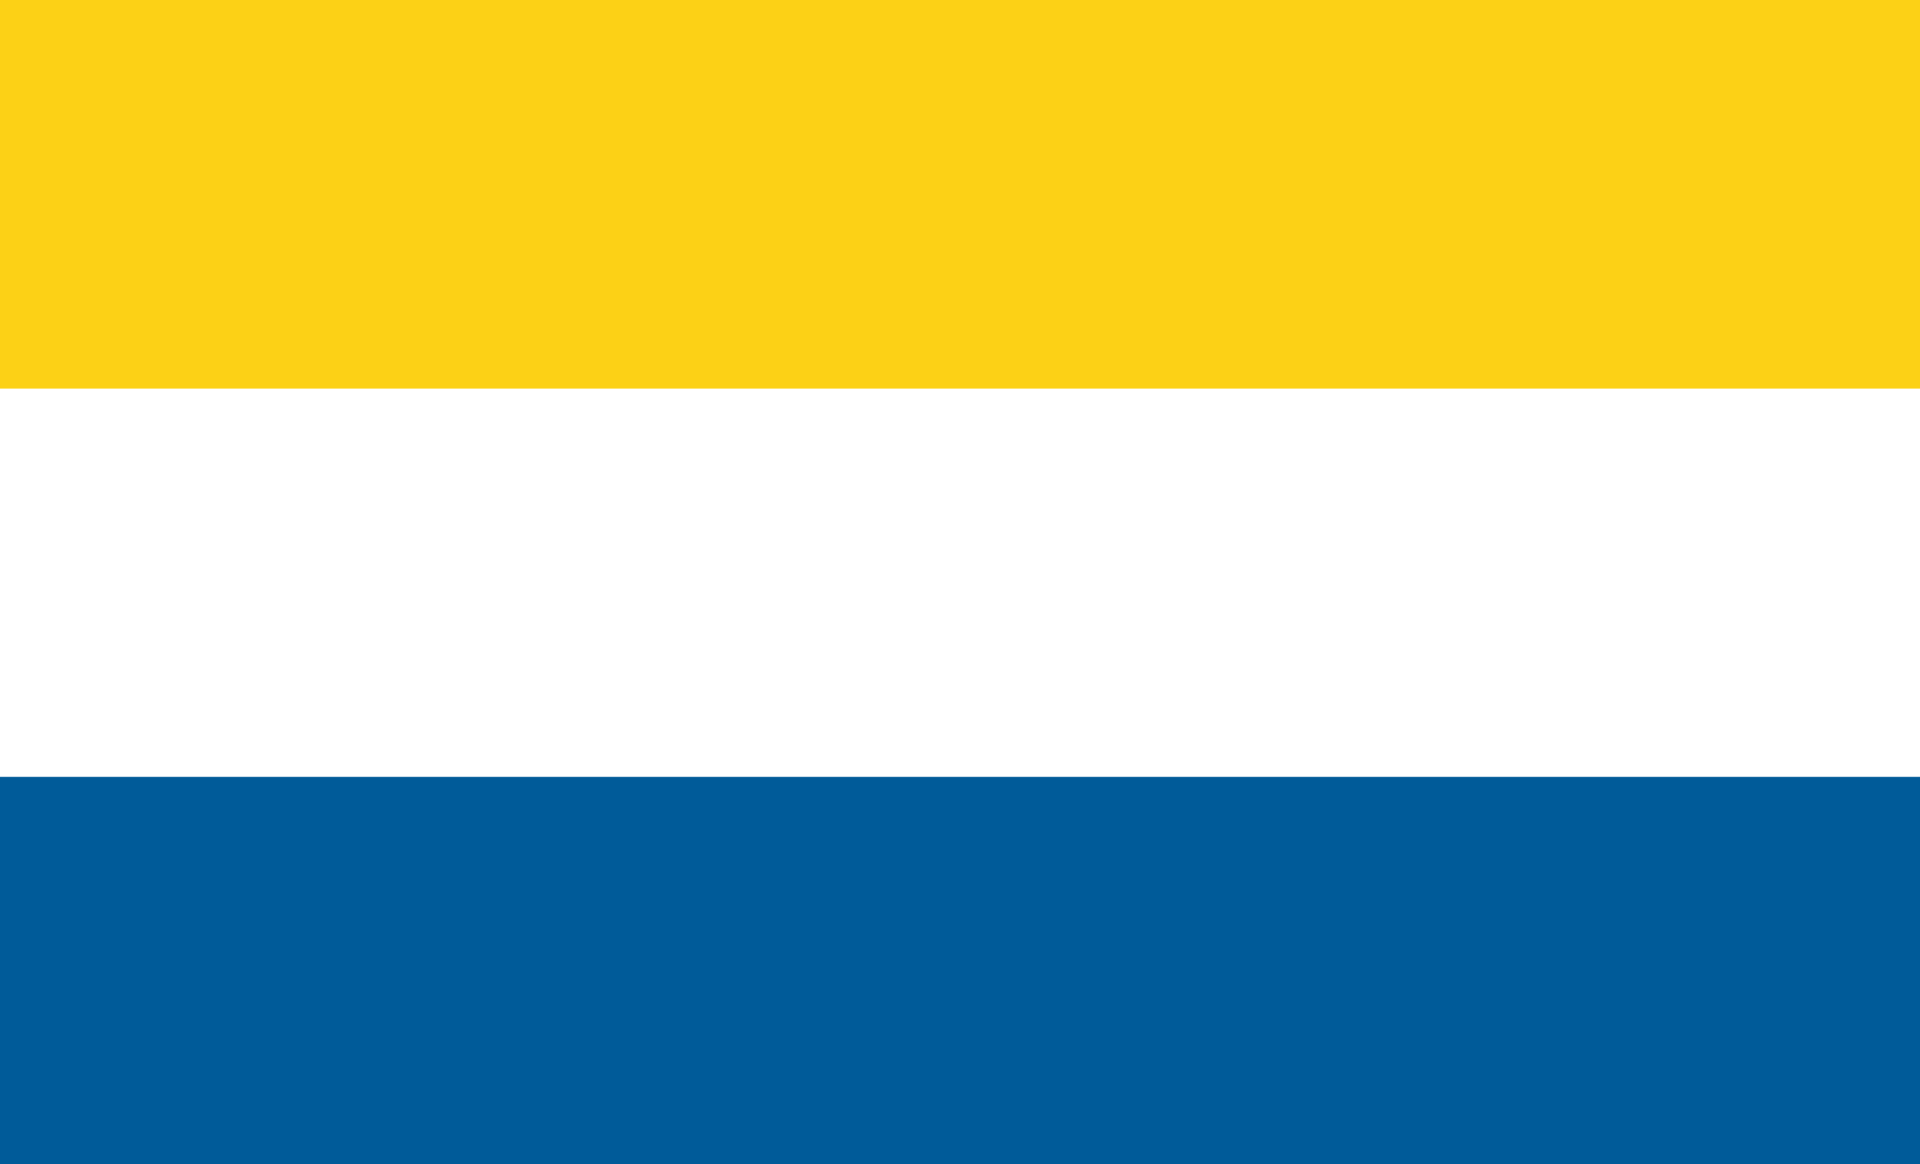 Tornedalens flagga, den har tre streck i följande ordning: Gul, vit och blått